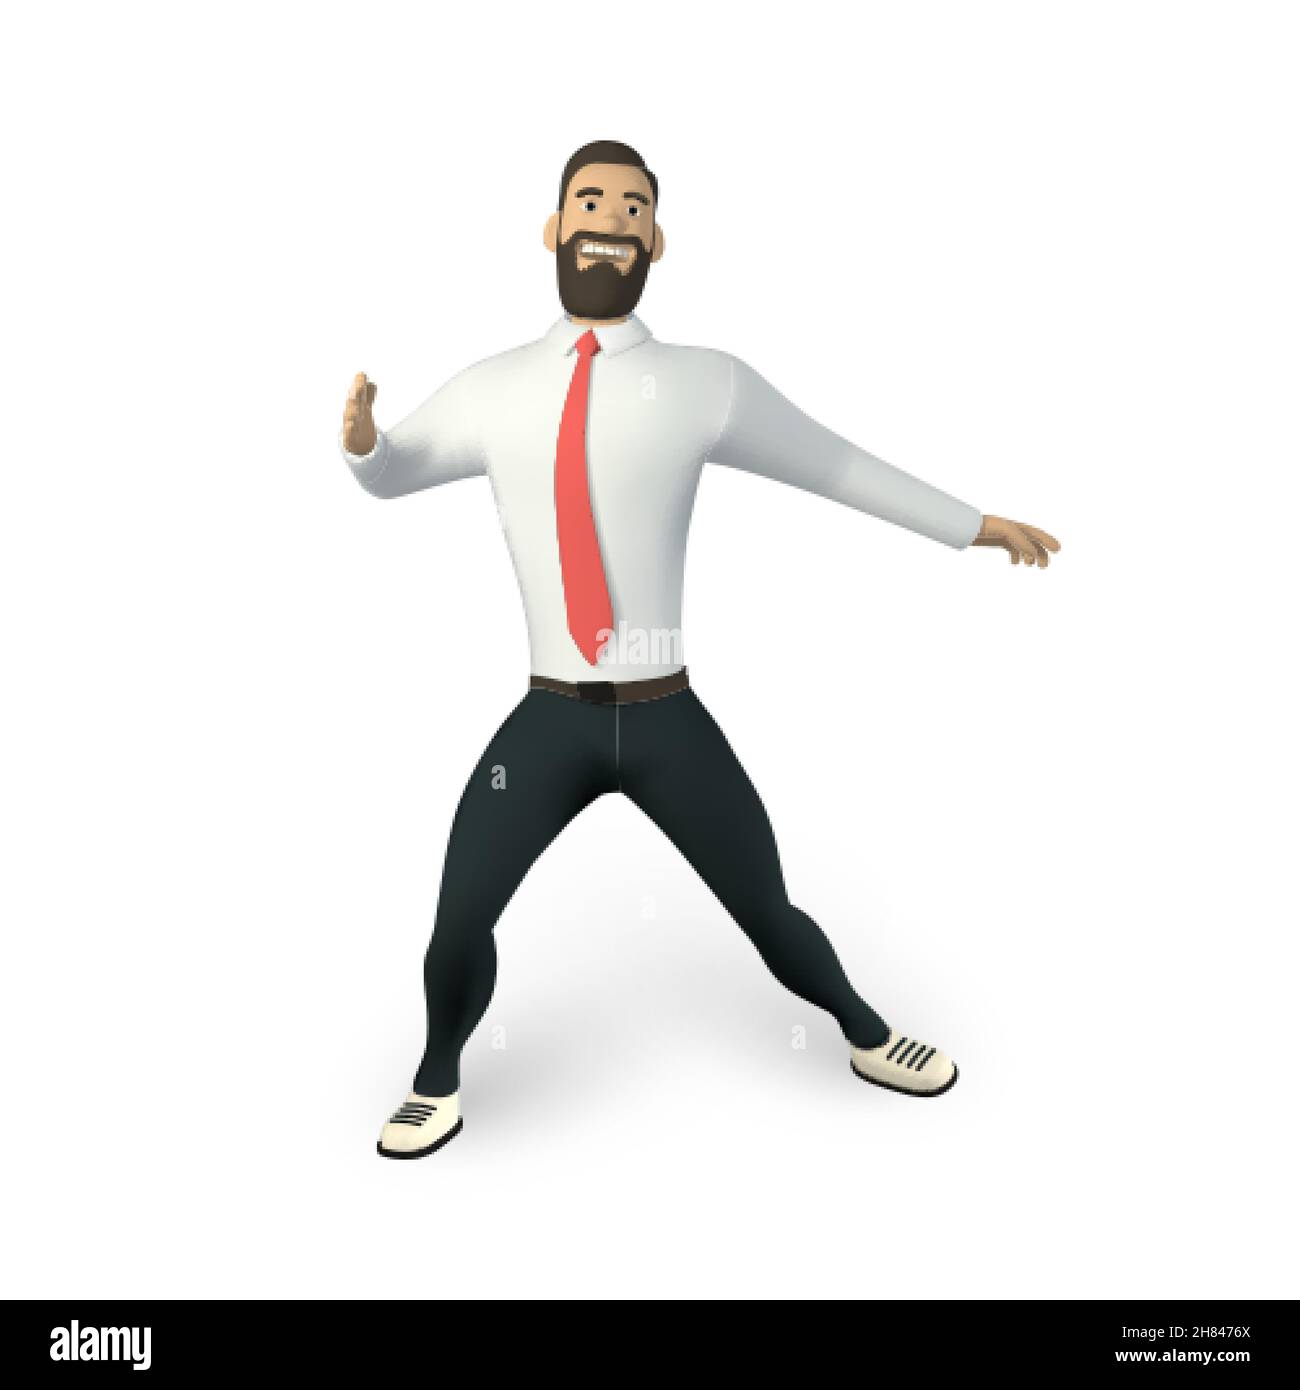 Personaggio uomo d'affari in stile cartoon 3D. Uomo in camicia bianca con cravatta. Ragazzo bearded, gesturing. Illustrazione vettoriale. Illustrazione Vettoriale